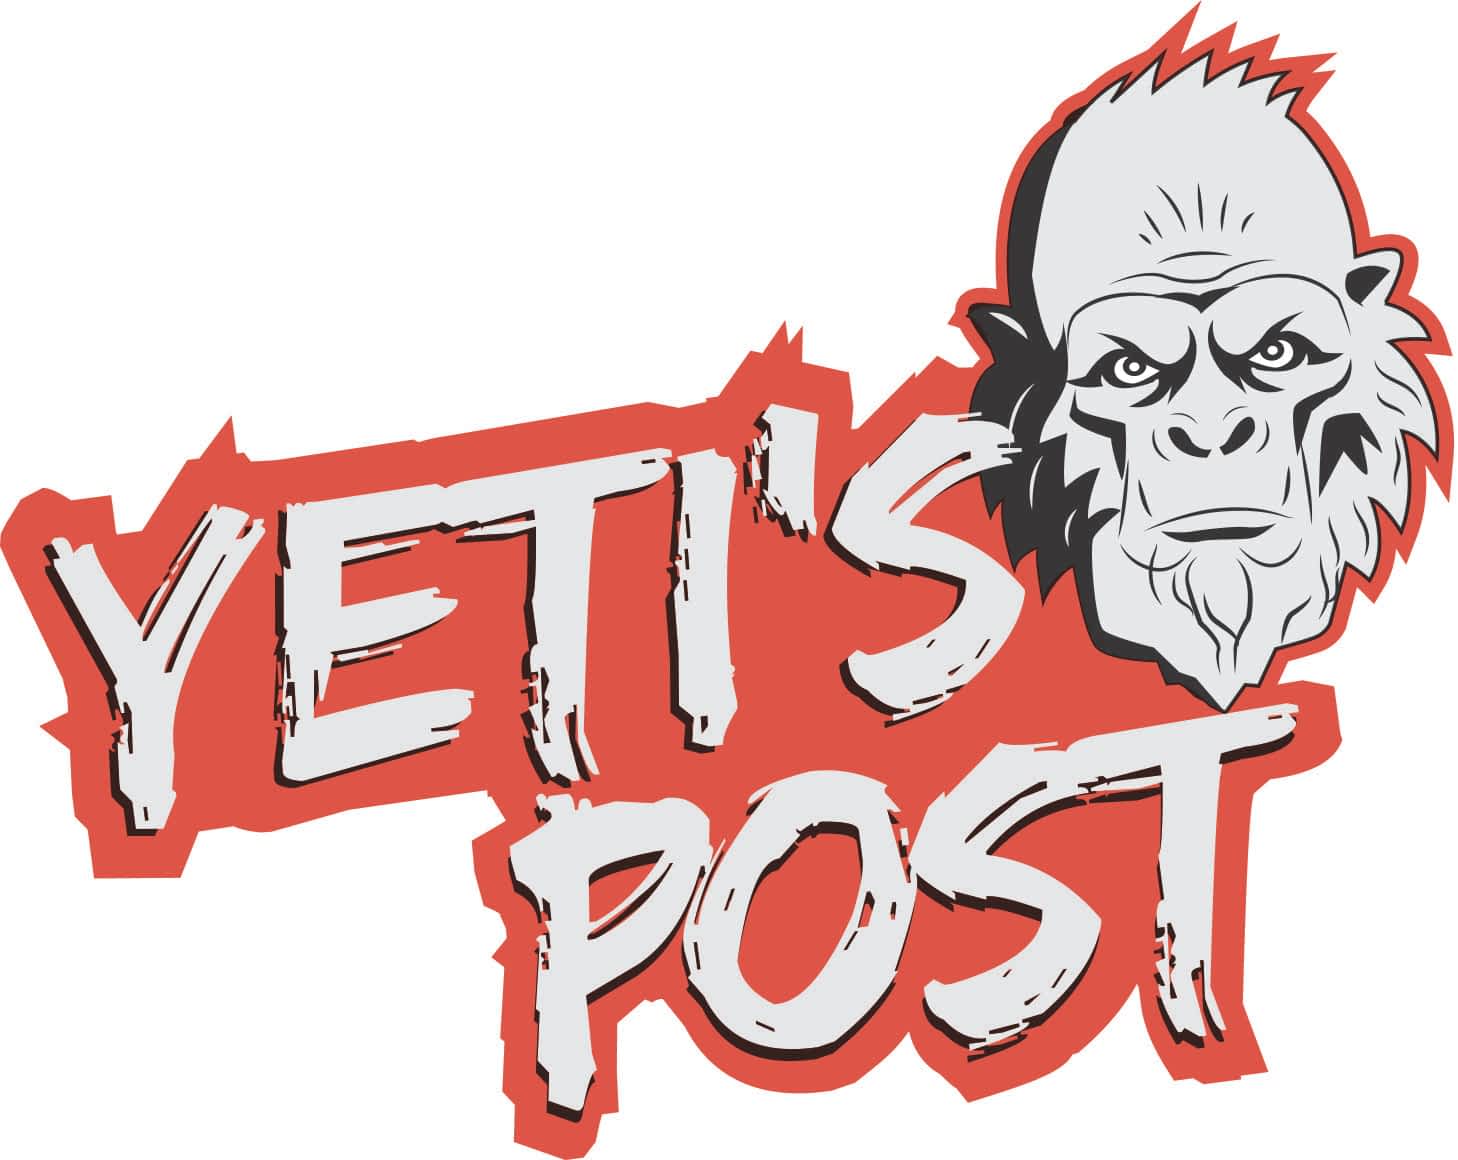 Yeti’s Post